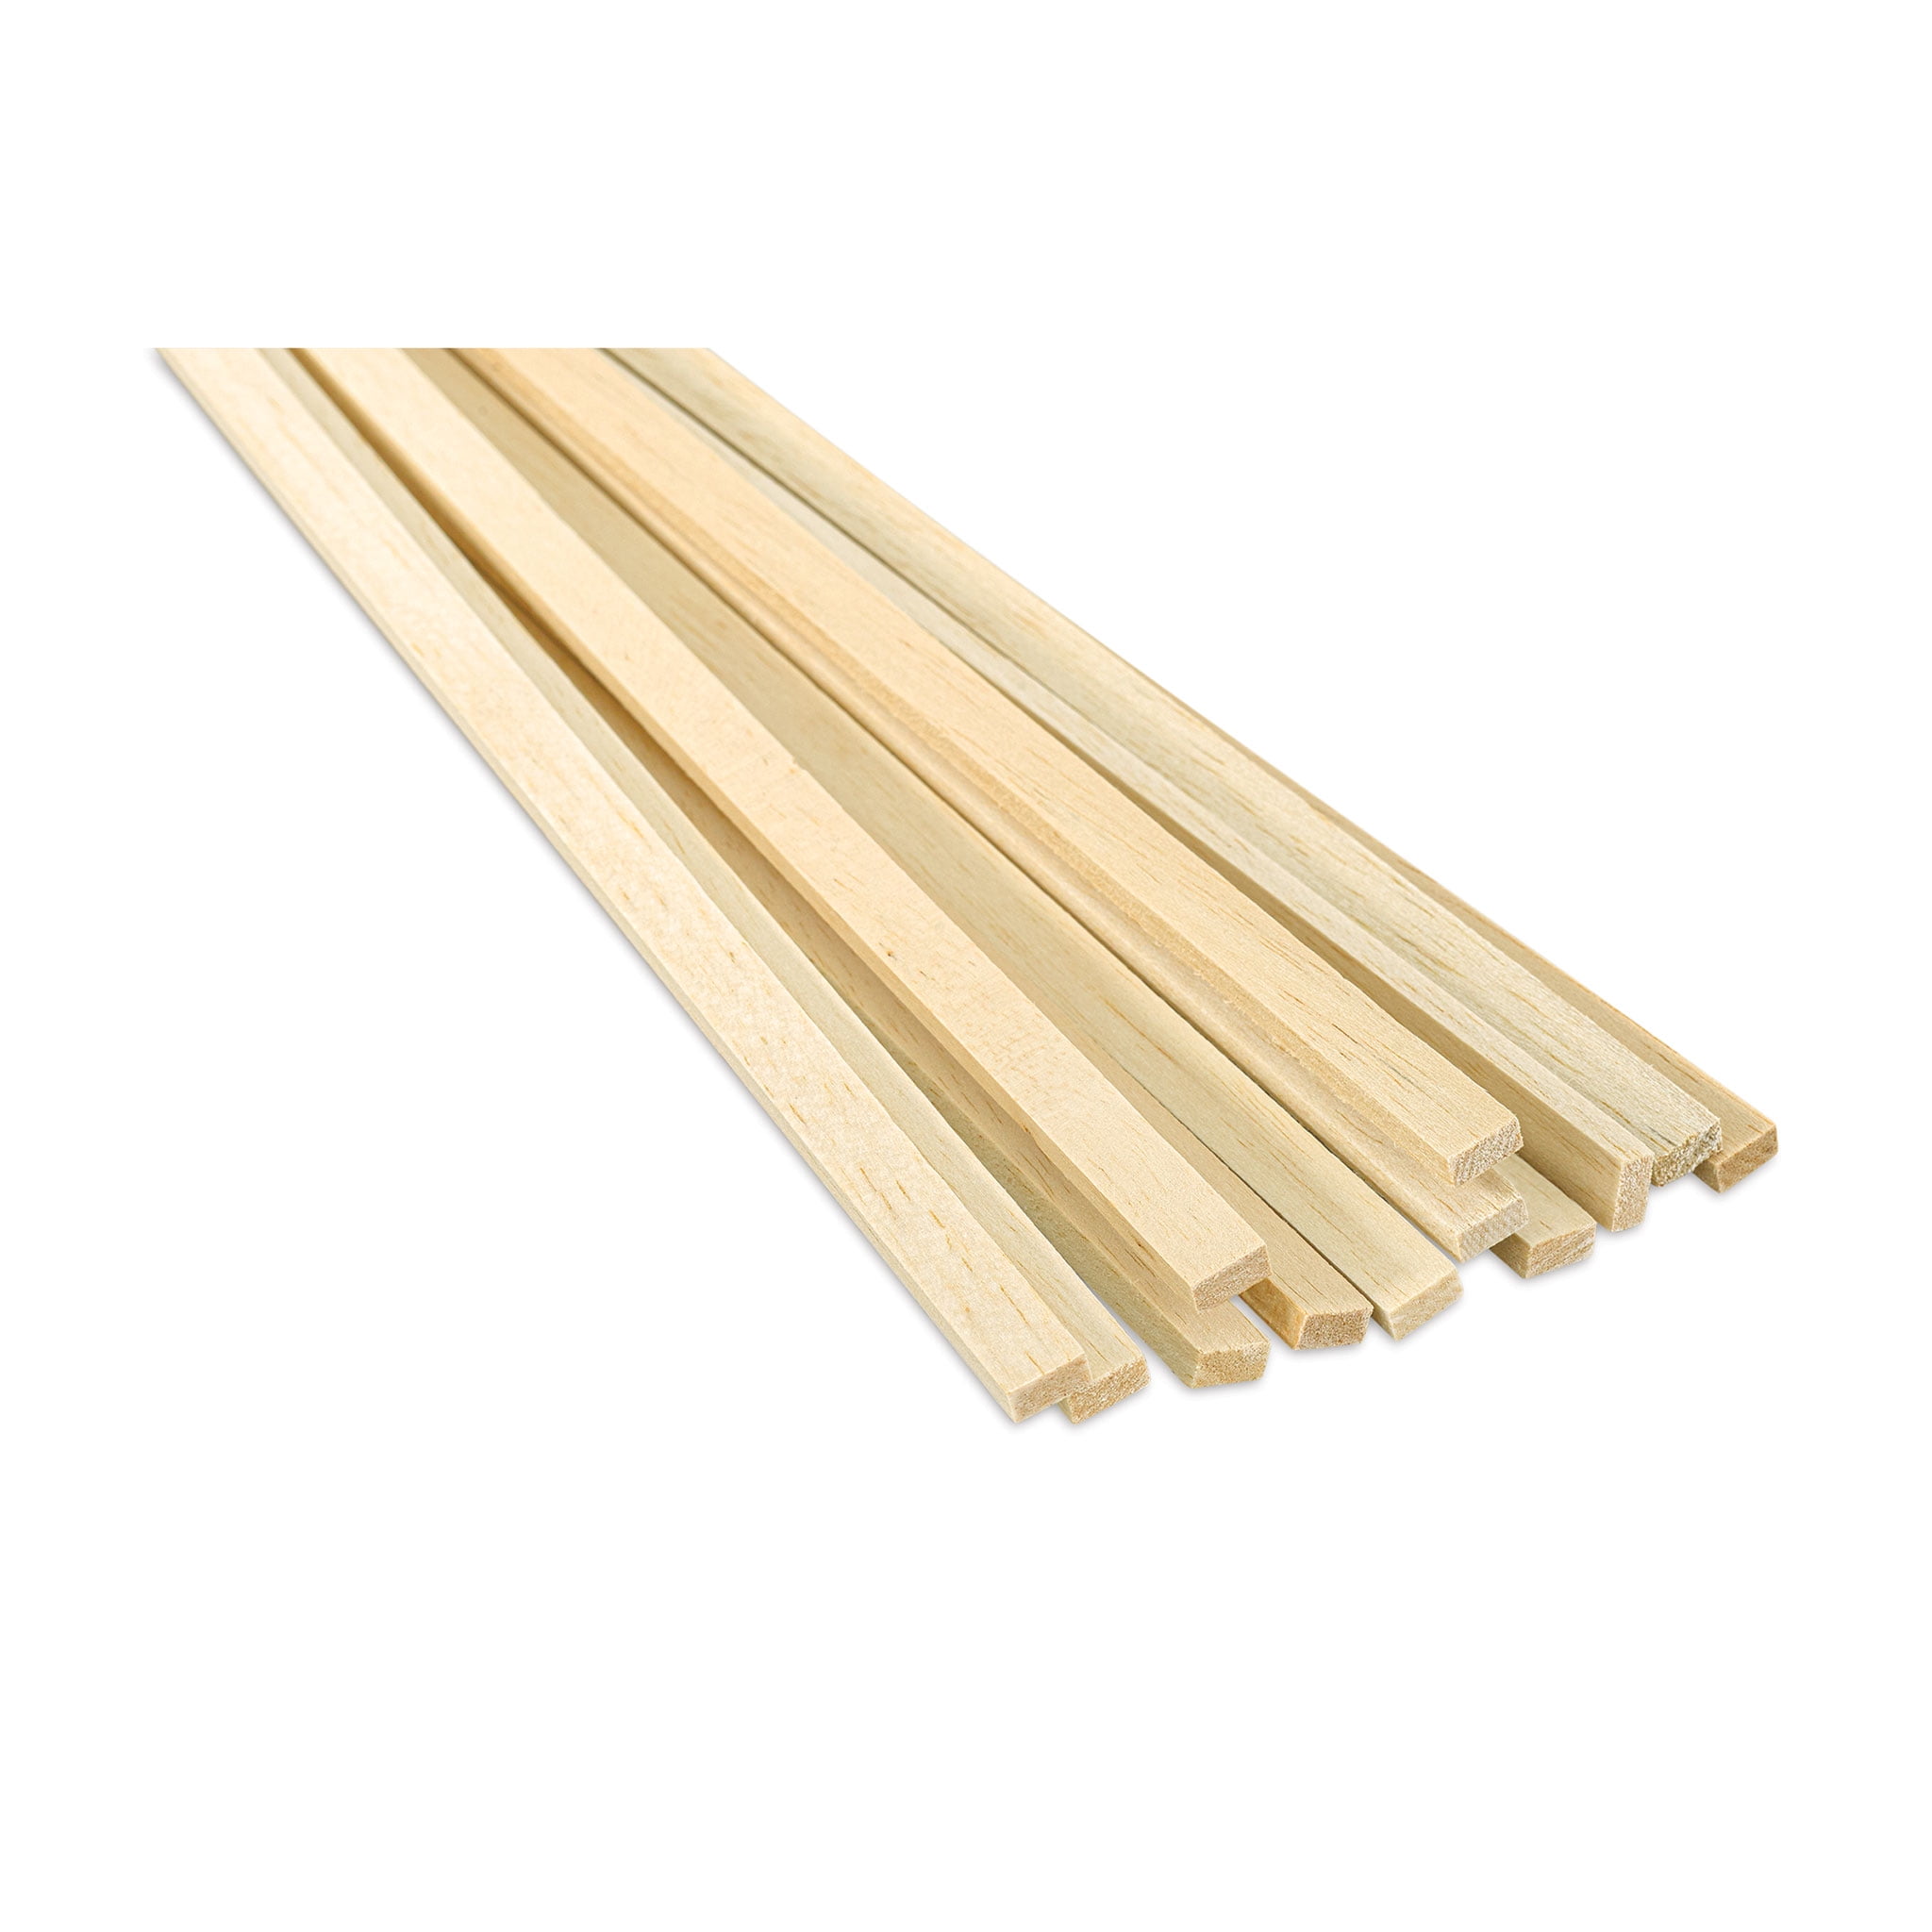 Bud Nosen Balsa Wood Sticks - 1/4 x 1/2 x 36, Pkg of 12